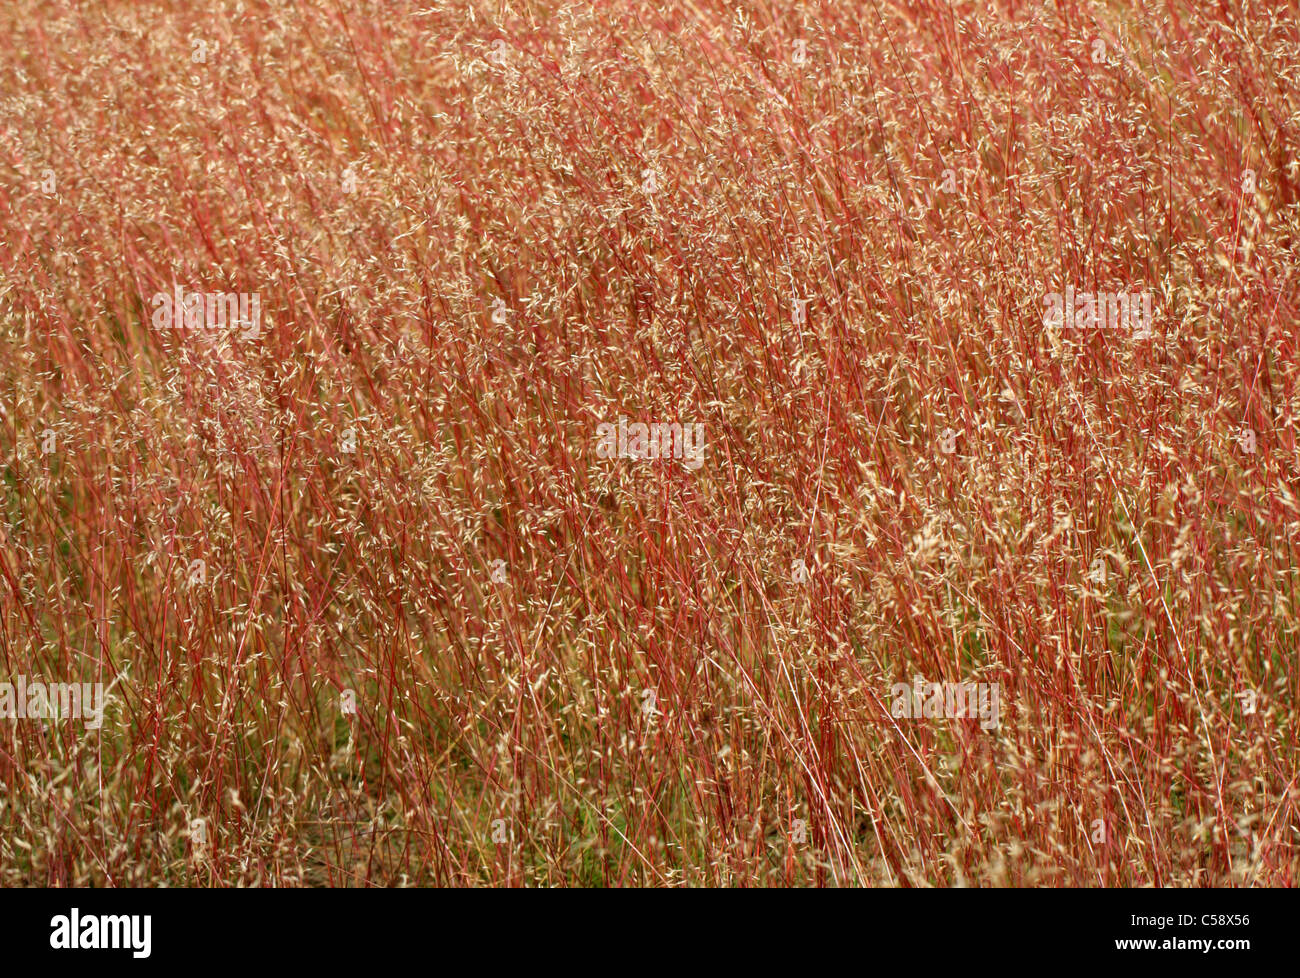 Capelli ondulati-erba, Deschampsia flexuosa, Poaceae. Un bel rosso di gambi di erba, Rammamere Heath, Bedfordshire, Regno Unito (luglio). Foto Stock